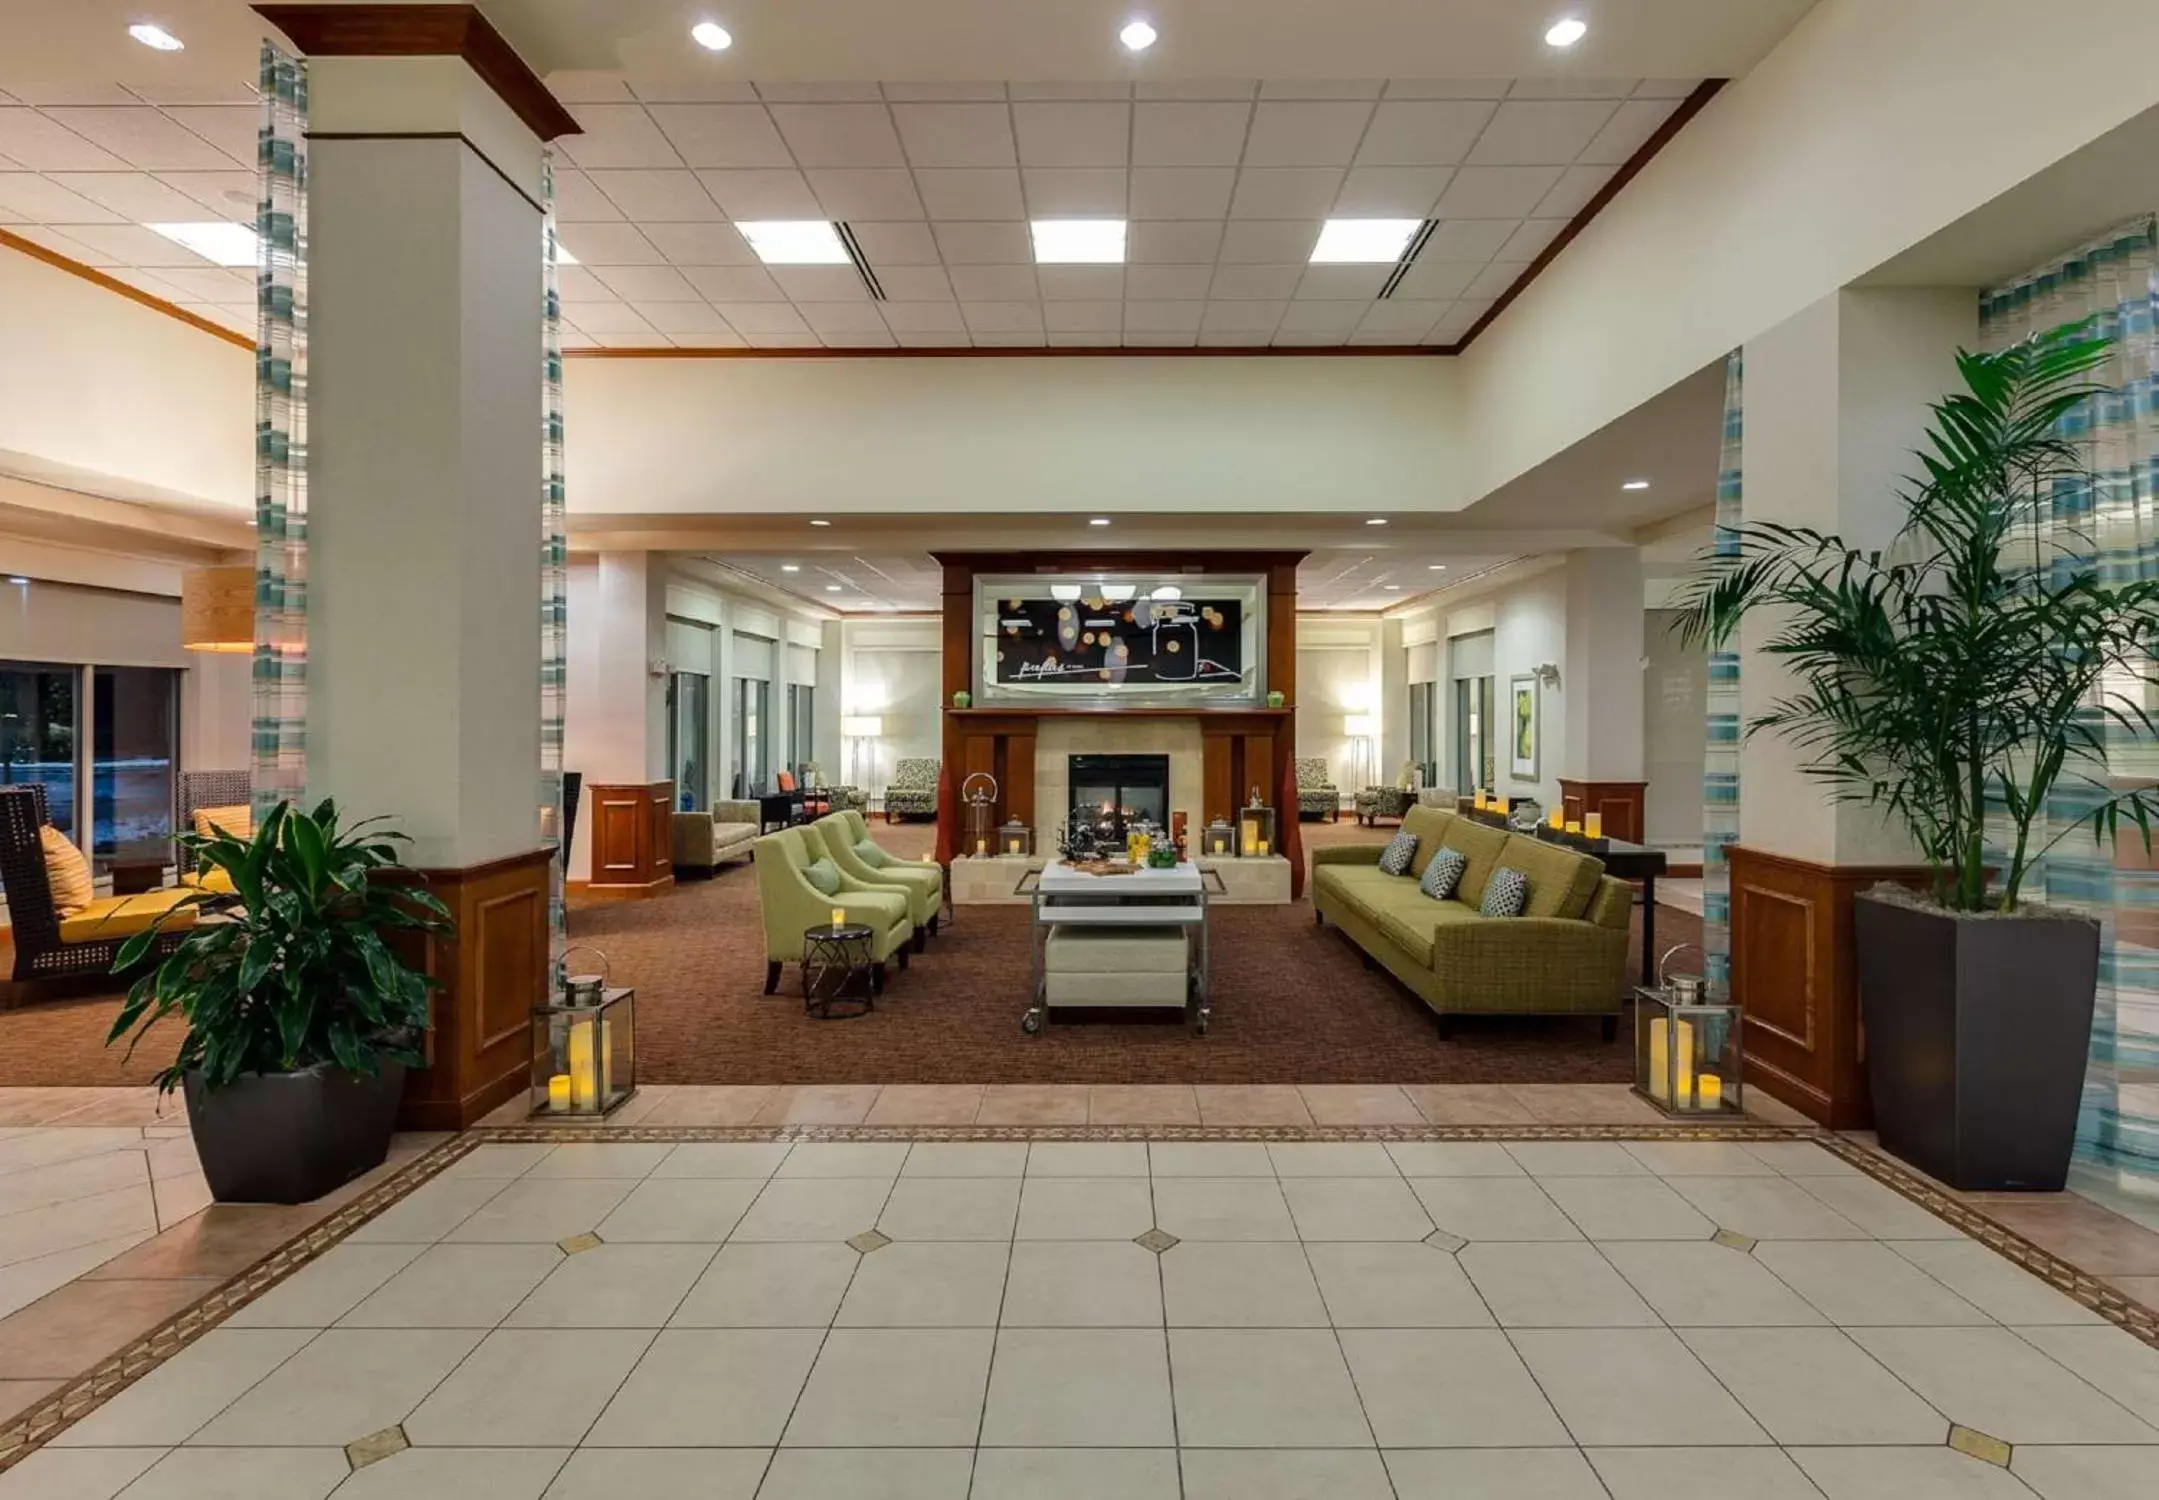 Lobby or reception, Lobby/Reception in Hilton Garden Inn Lake Forest Mettawa